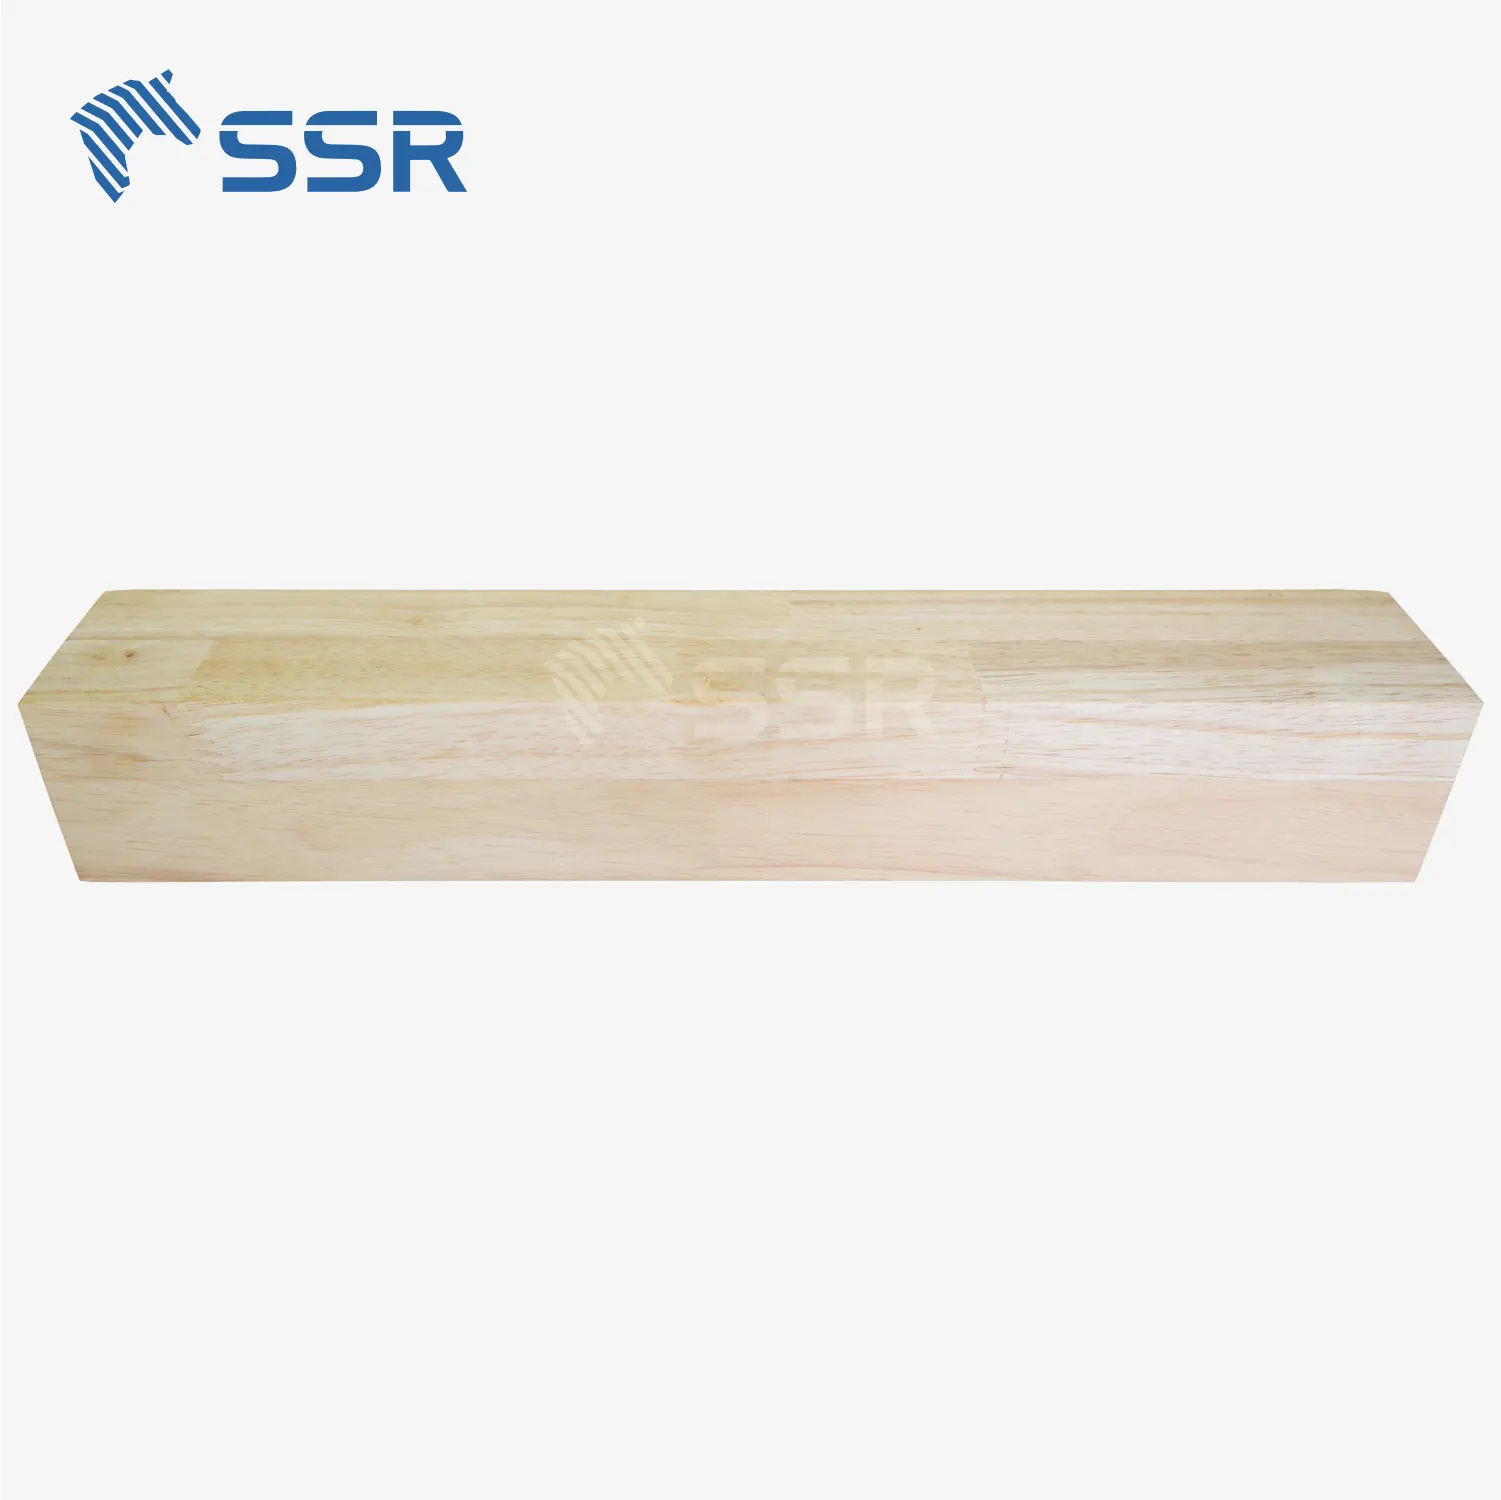 SSR VINA-Borracha Madeira/Acácia/Sapele Scantling - Rubberwood Acacácia Sapele bloco de madeira scantling para peças de escada